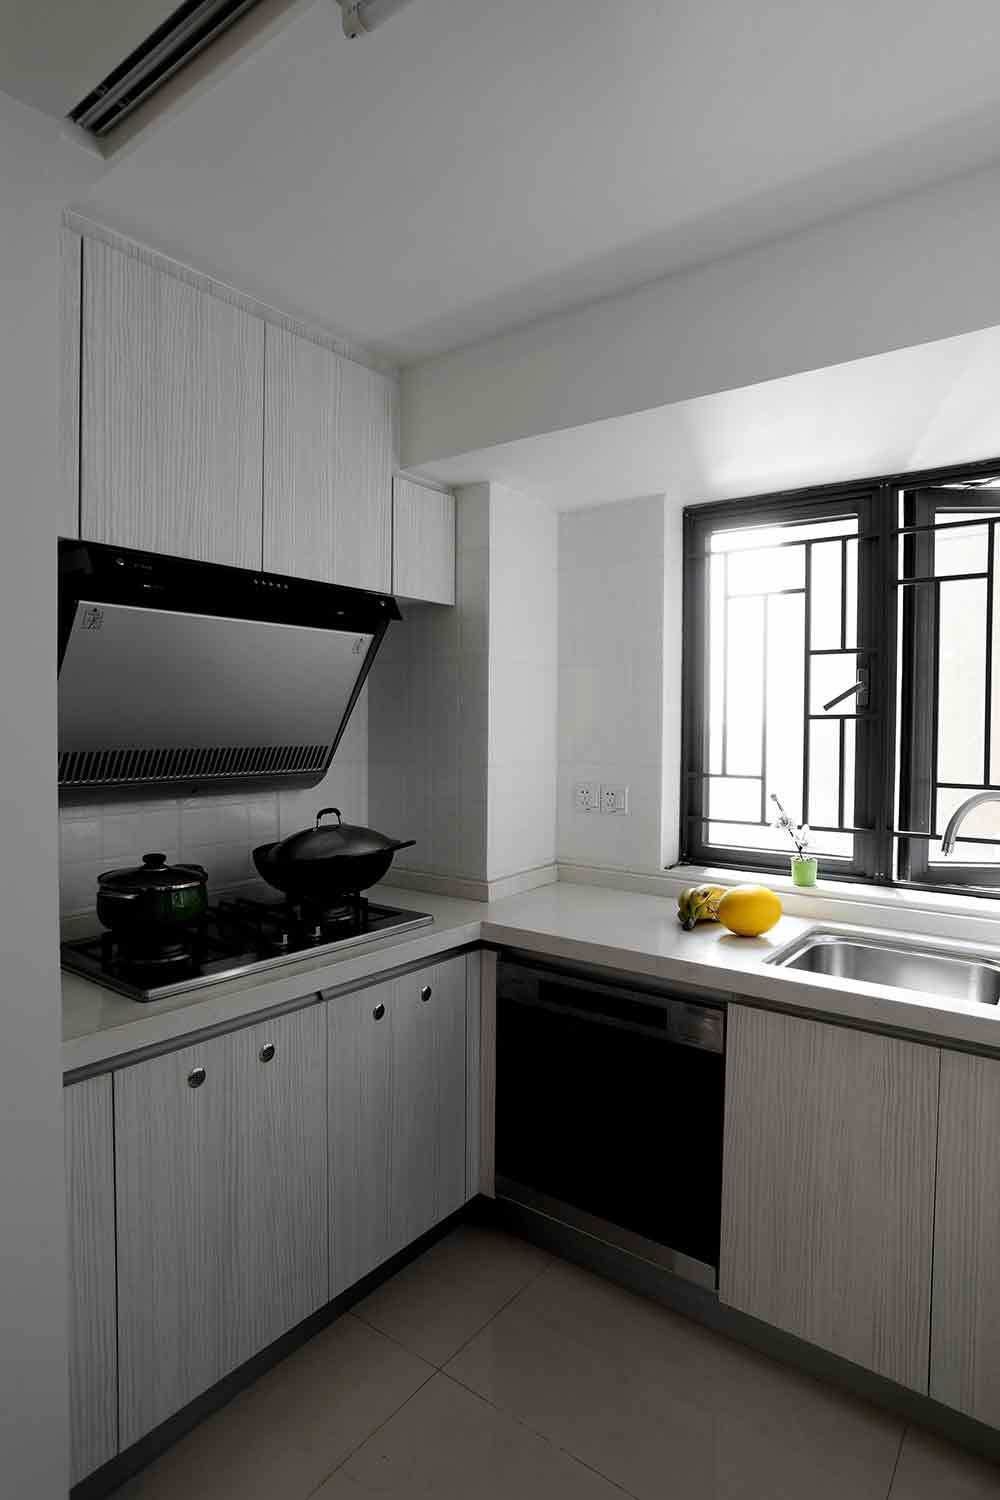 厨房的方形格局使得不同功能能够分区布置，在日常实际使用时极为便利。